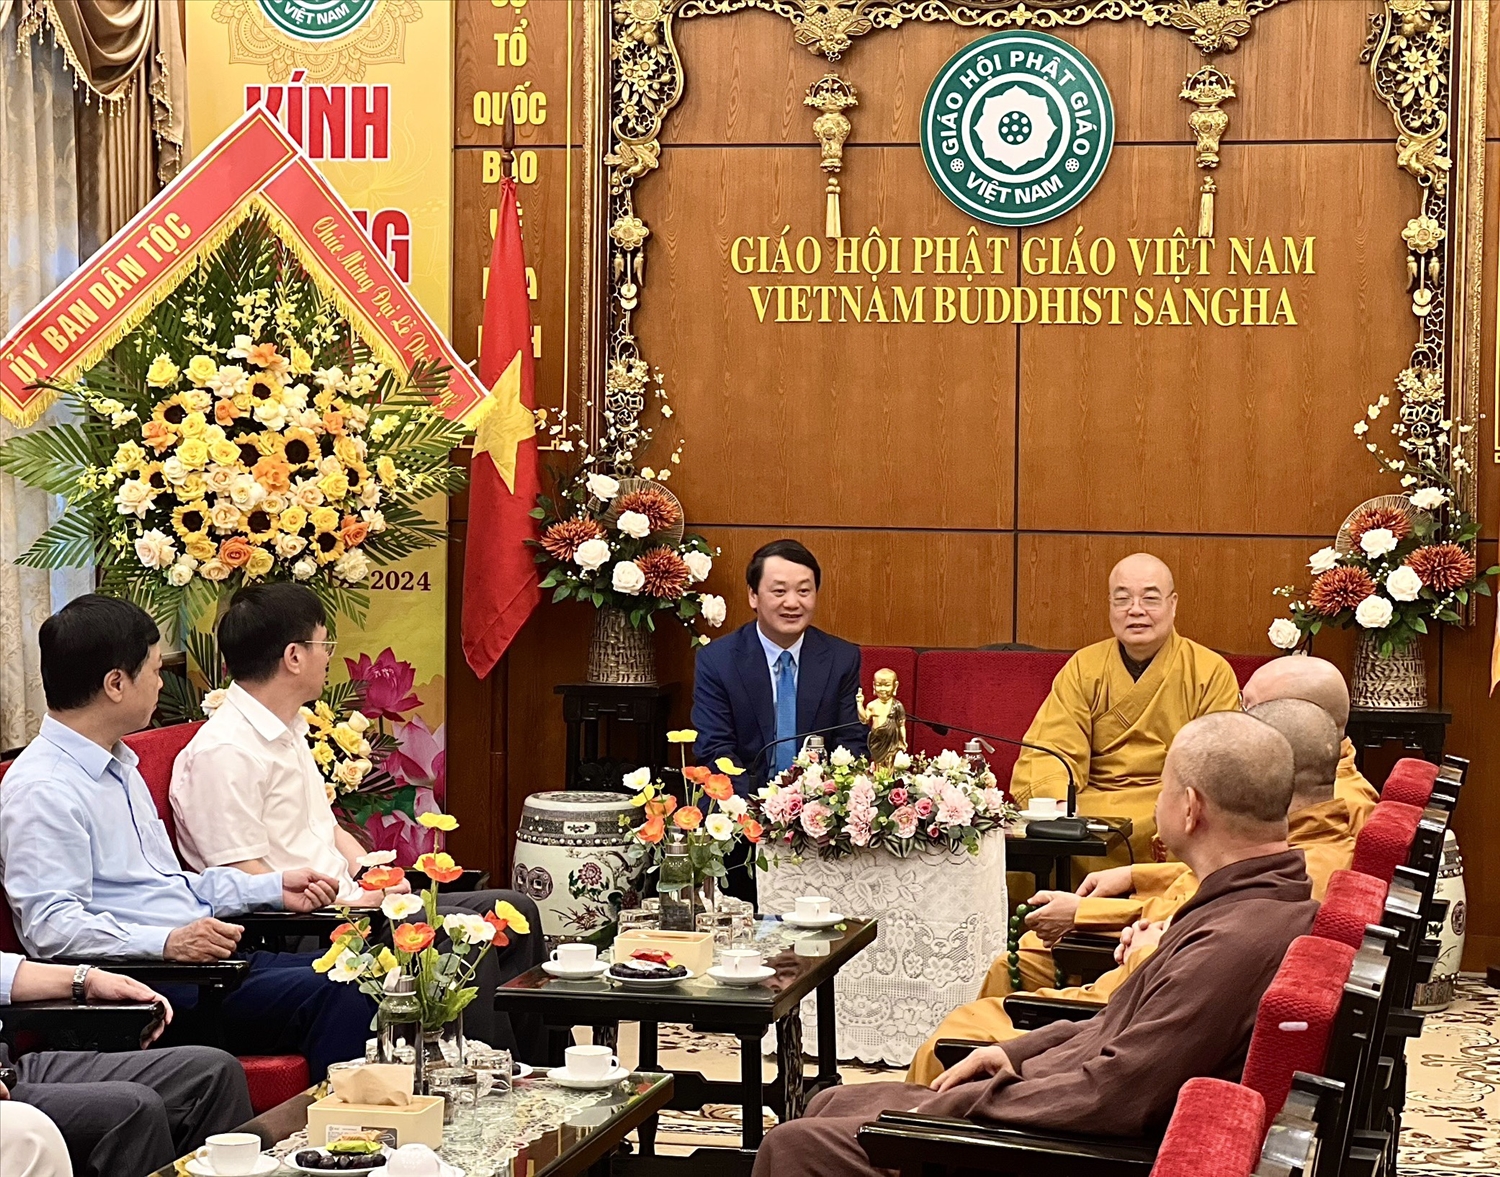 TIN THỜI SỰ Bộ trưởng, Chủ nhiệm Hầu A Lềnh thăm và chúc mừng Giáo hội Phật giáo Việt Nam nhân Đại lễ Phật đản